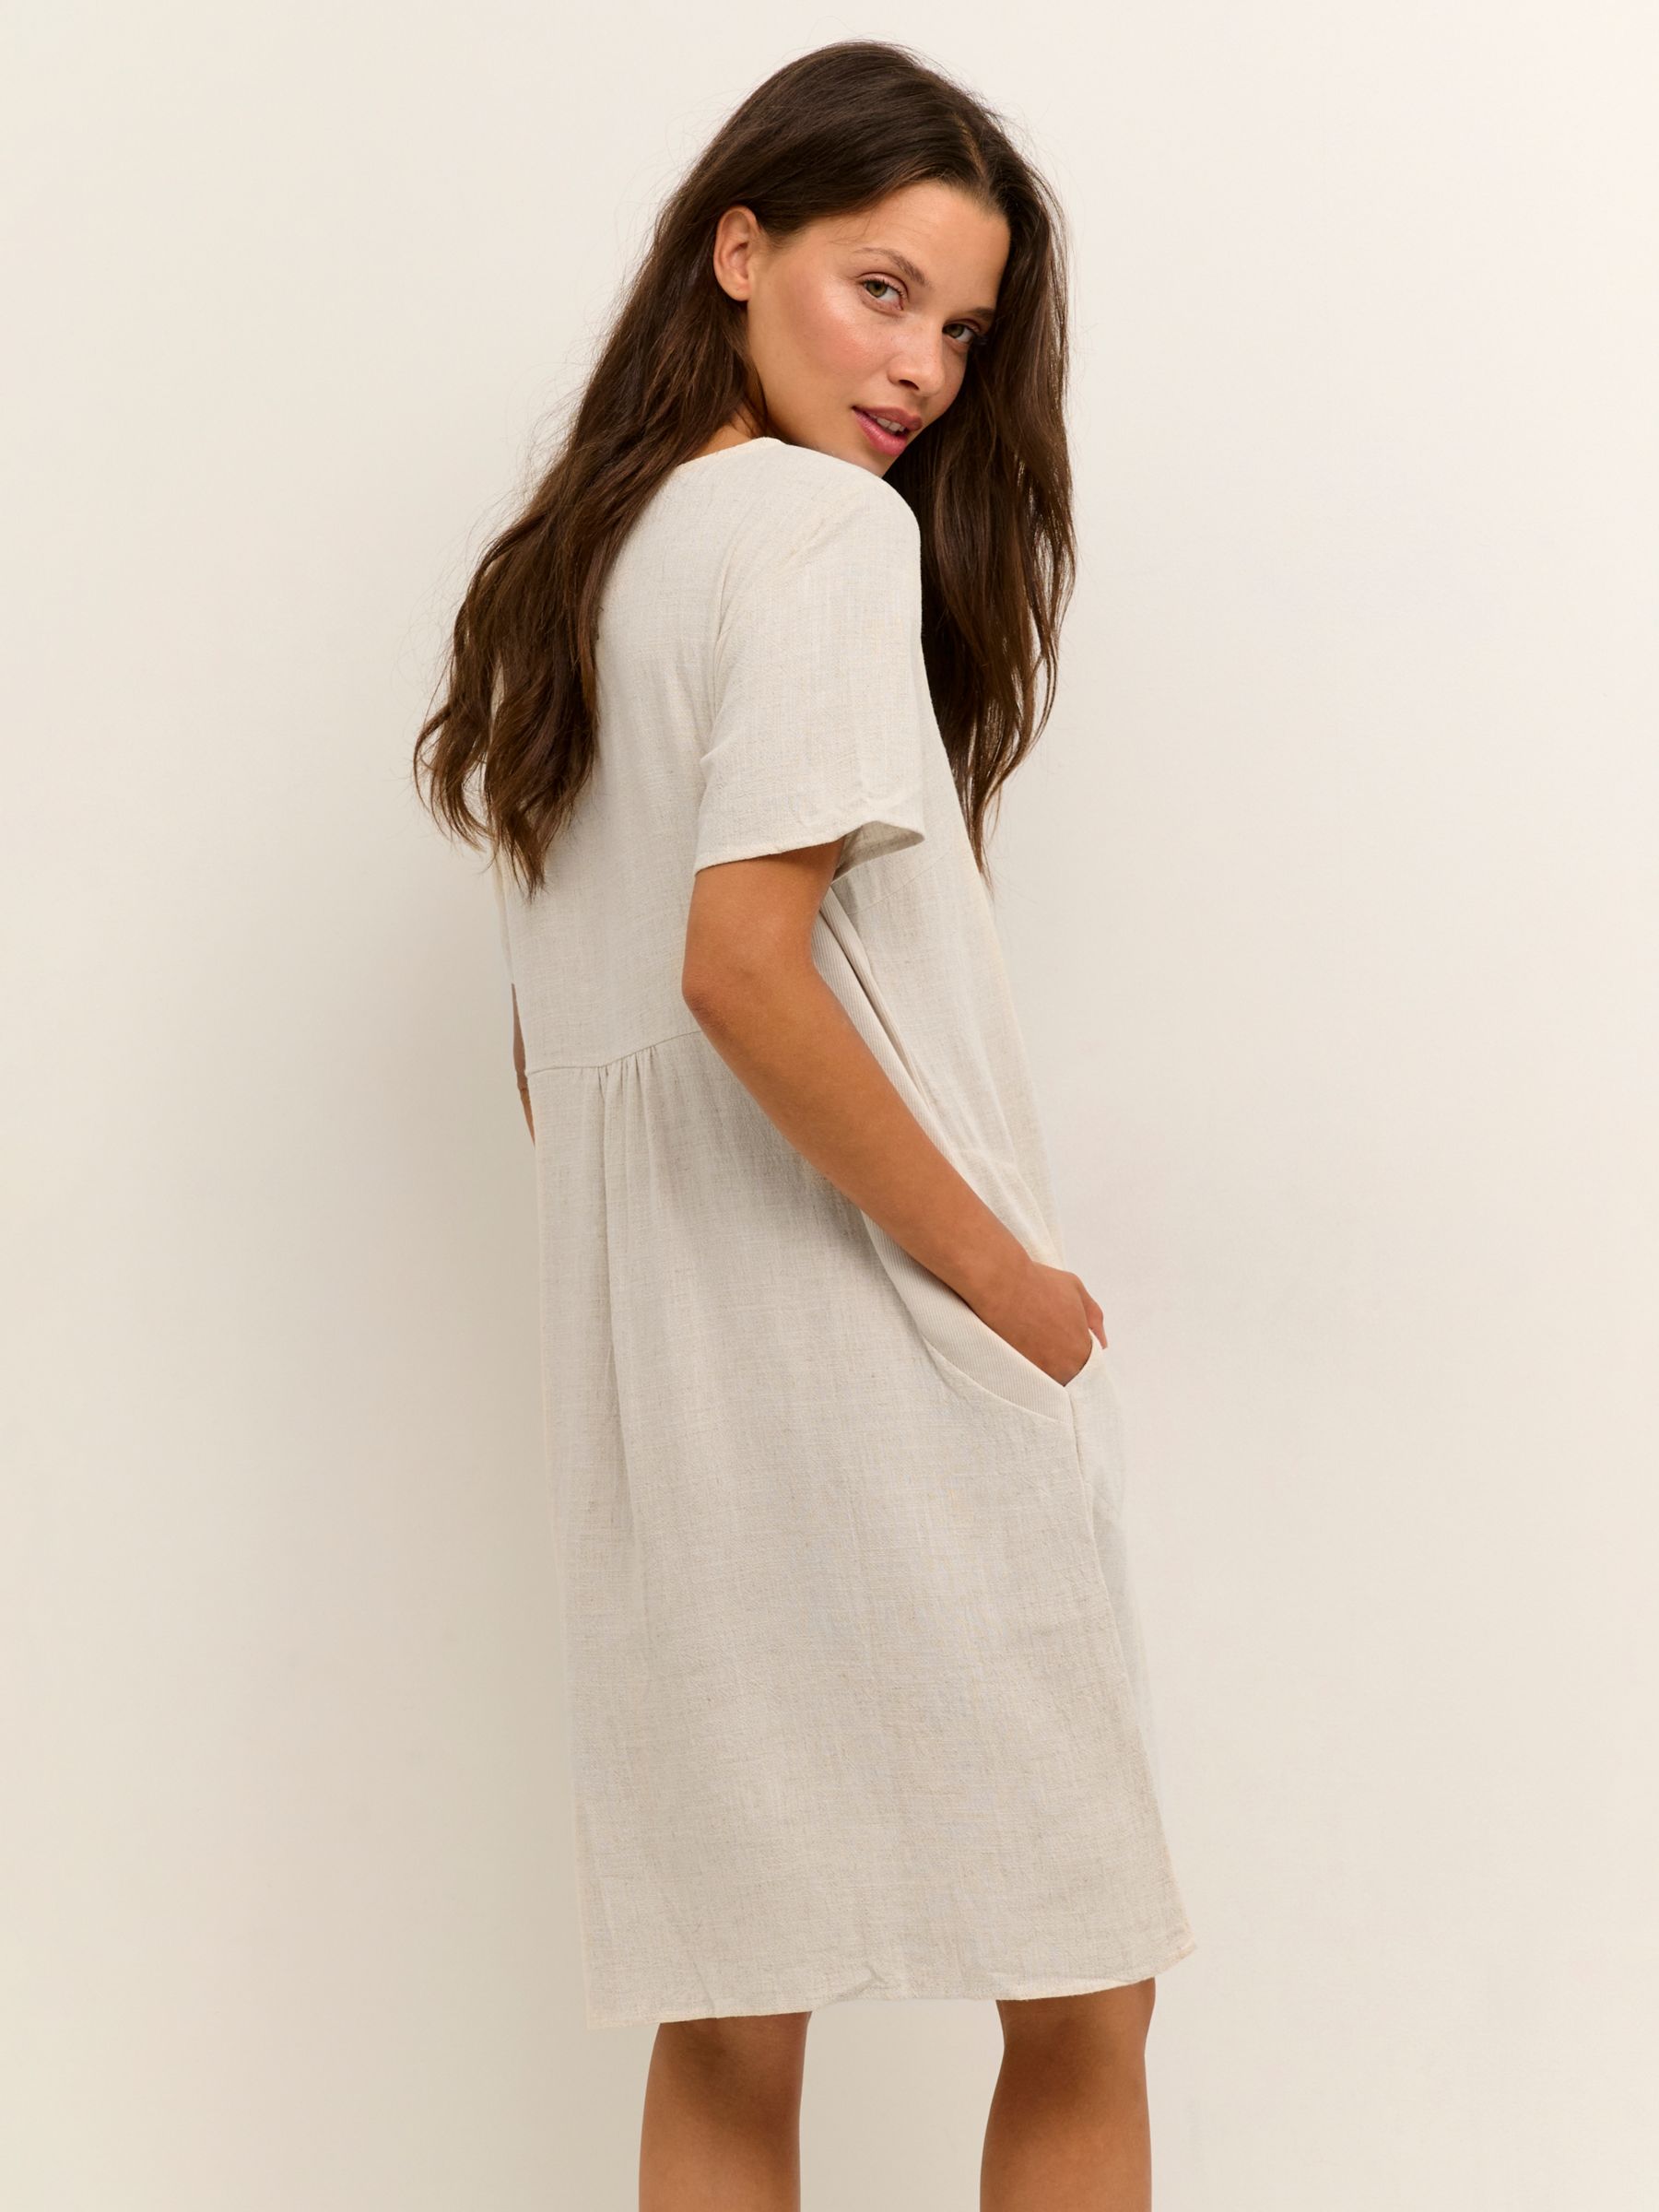 KAFFE Liny Linen Blend T-Shirt Dress, Light Sand Linen, 10